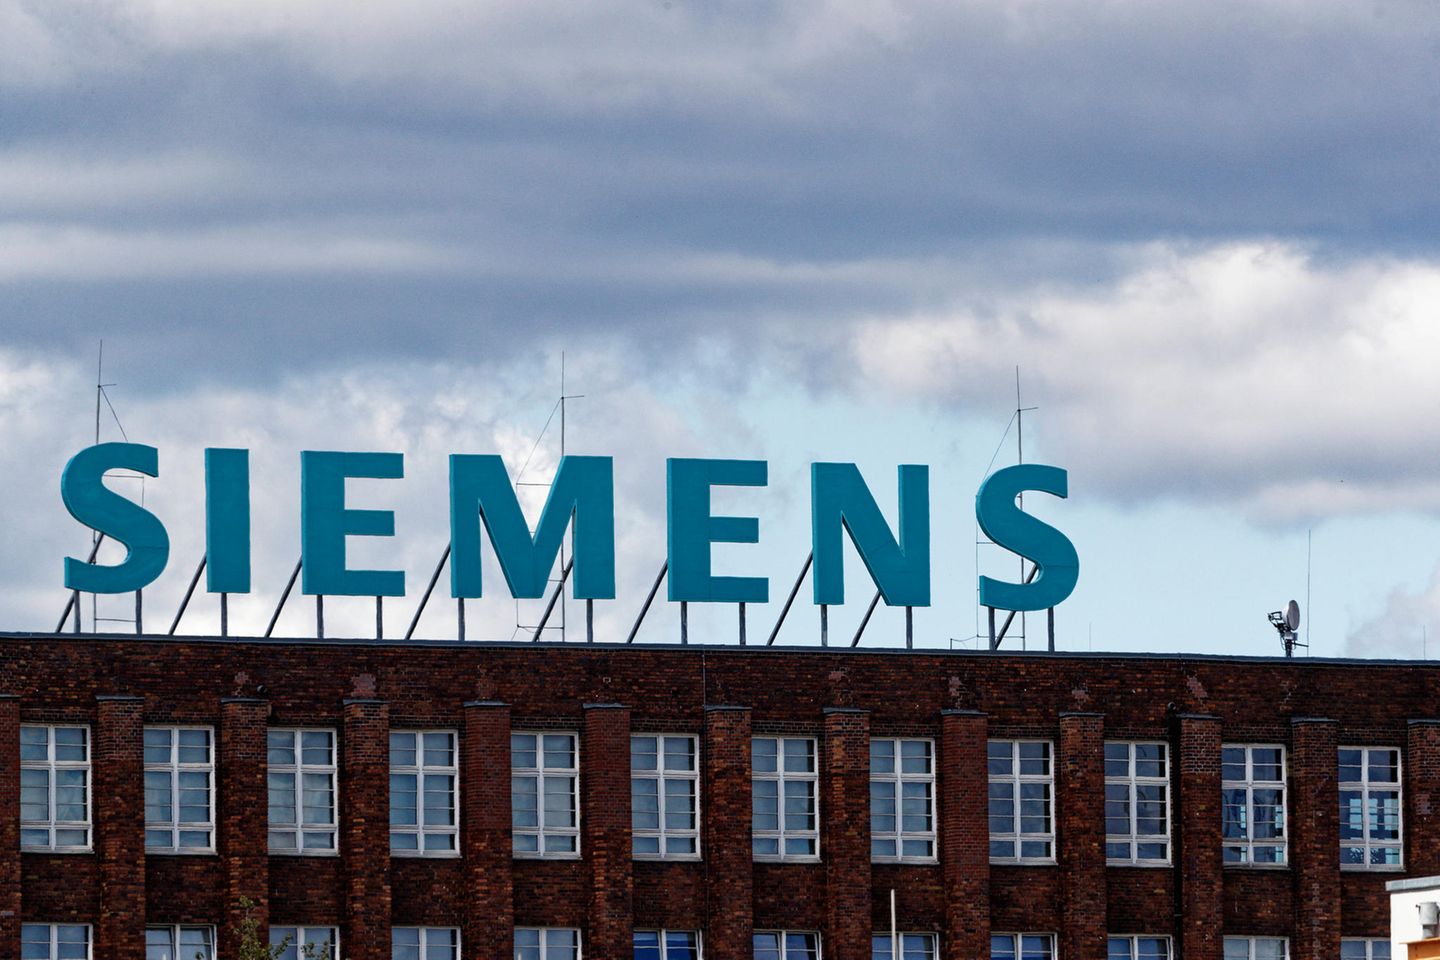 Siemensschirftzug auf der Wand eines Werks in Berlin